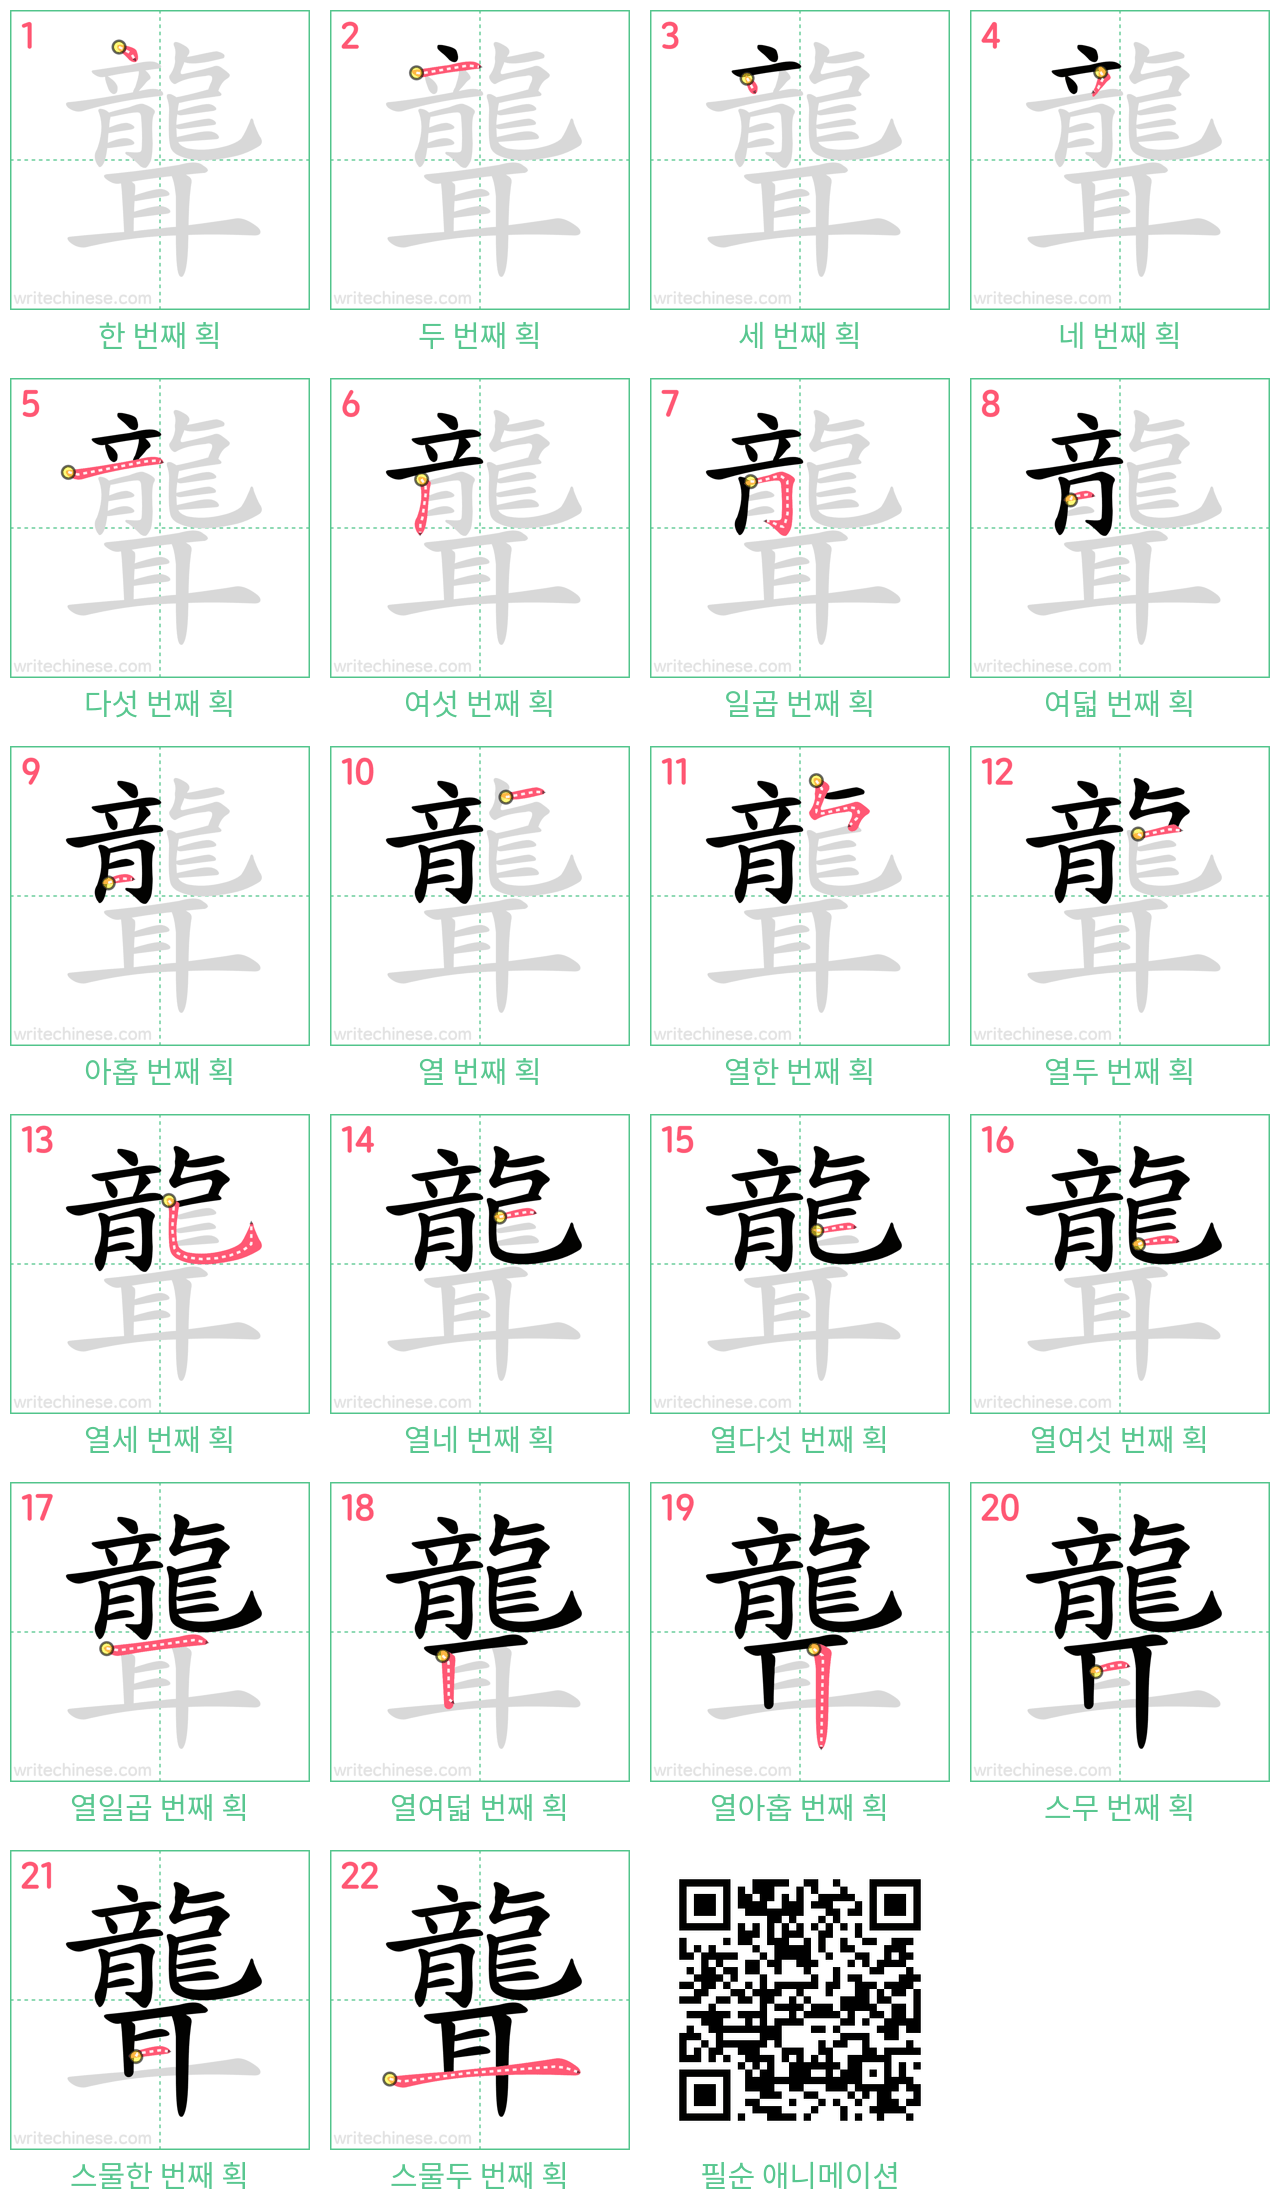 聾 step-by-step stroke order diagrams